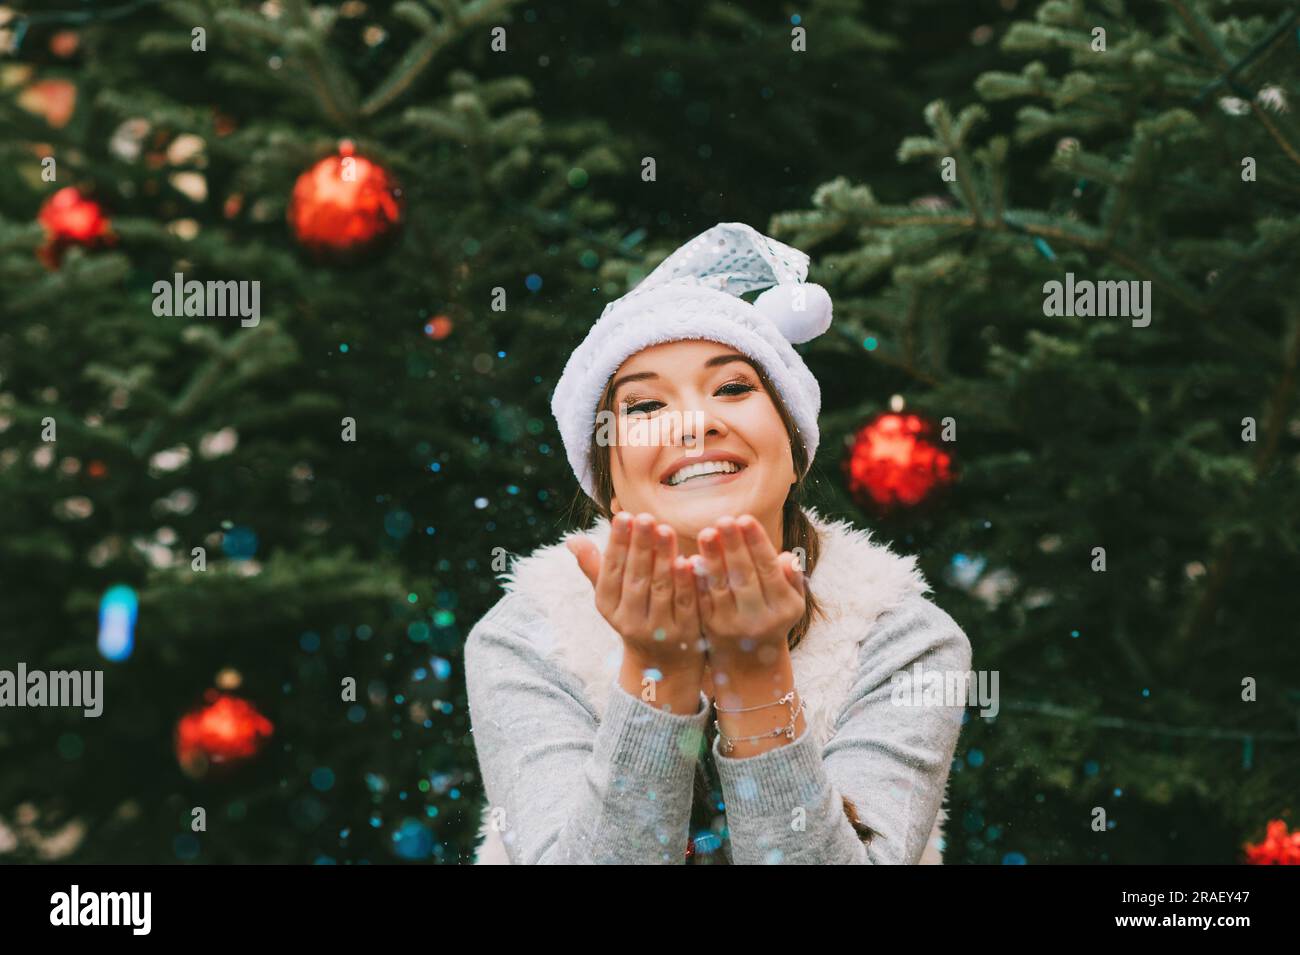 Portrait de fête de la jeune femme heureuse posant à l'extérieur près de l'arbre de Noël, soufflant des paillettes, portant le chapeau de père Noël argenté Banque D'Images